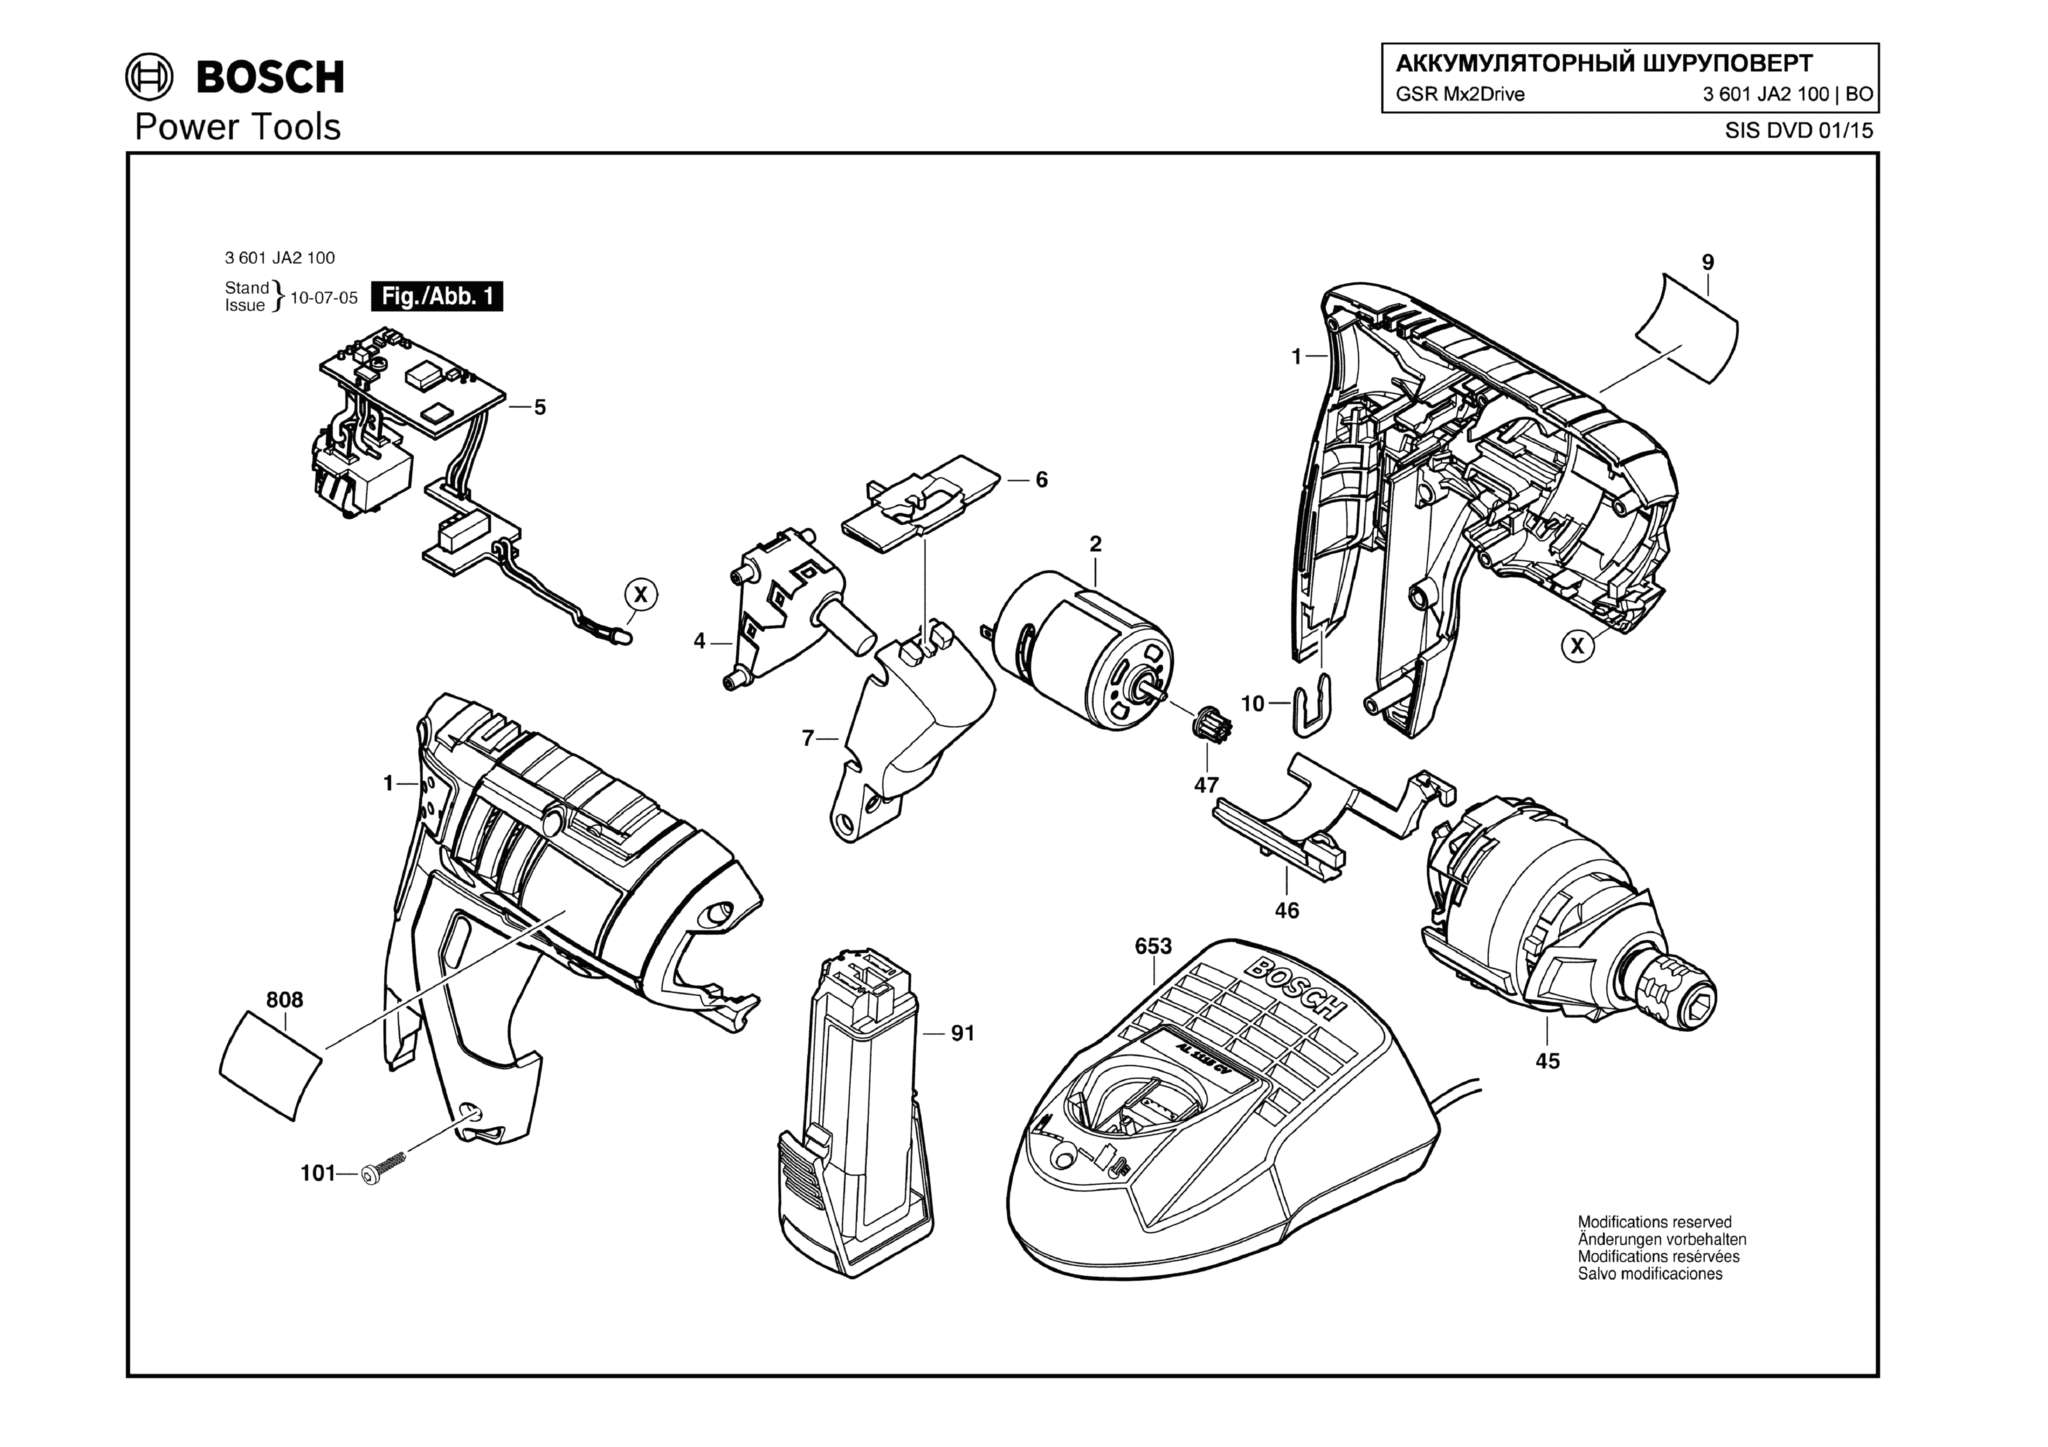 Запчасти, схема и деталировка Bosch GSR Mx2DRIVE (ТИП 3601JA2100)